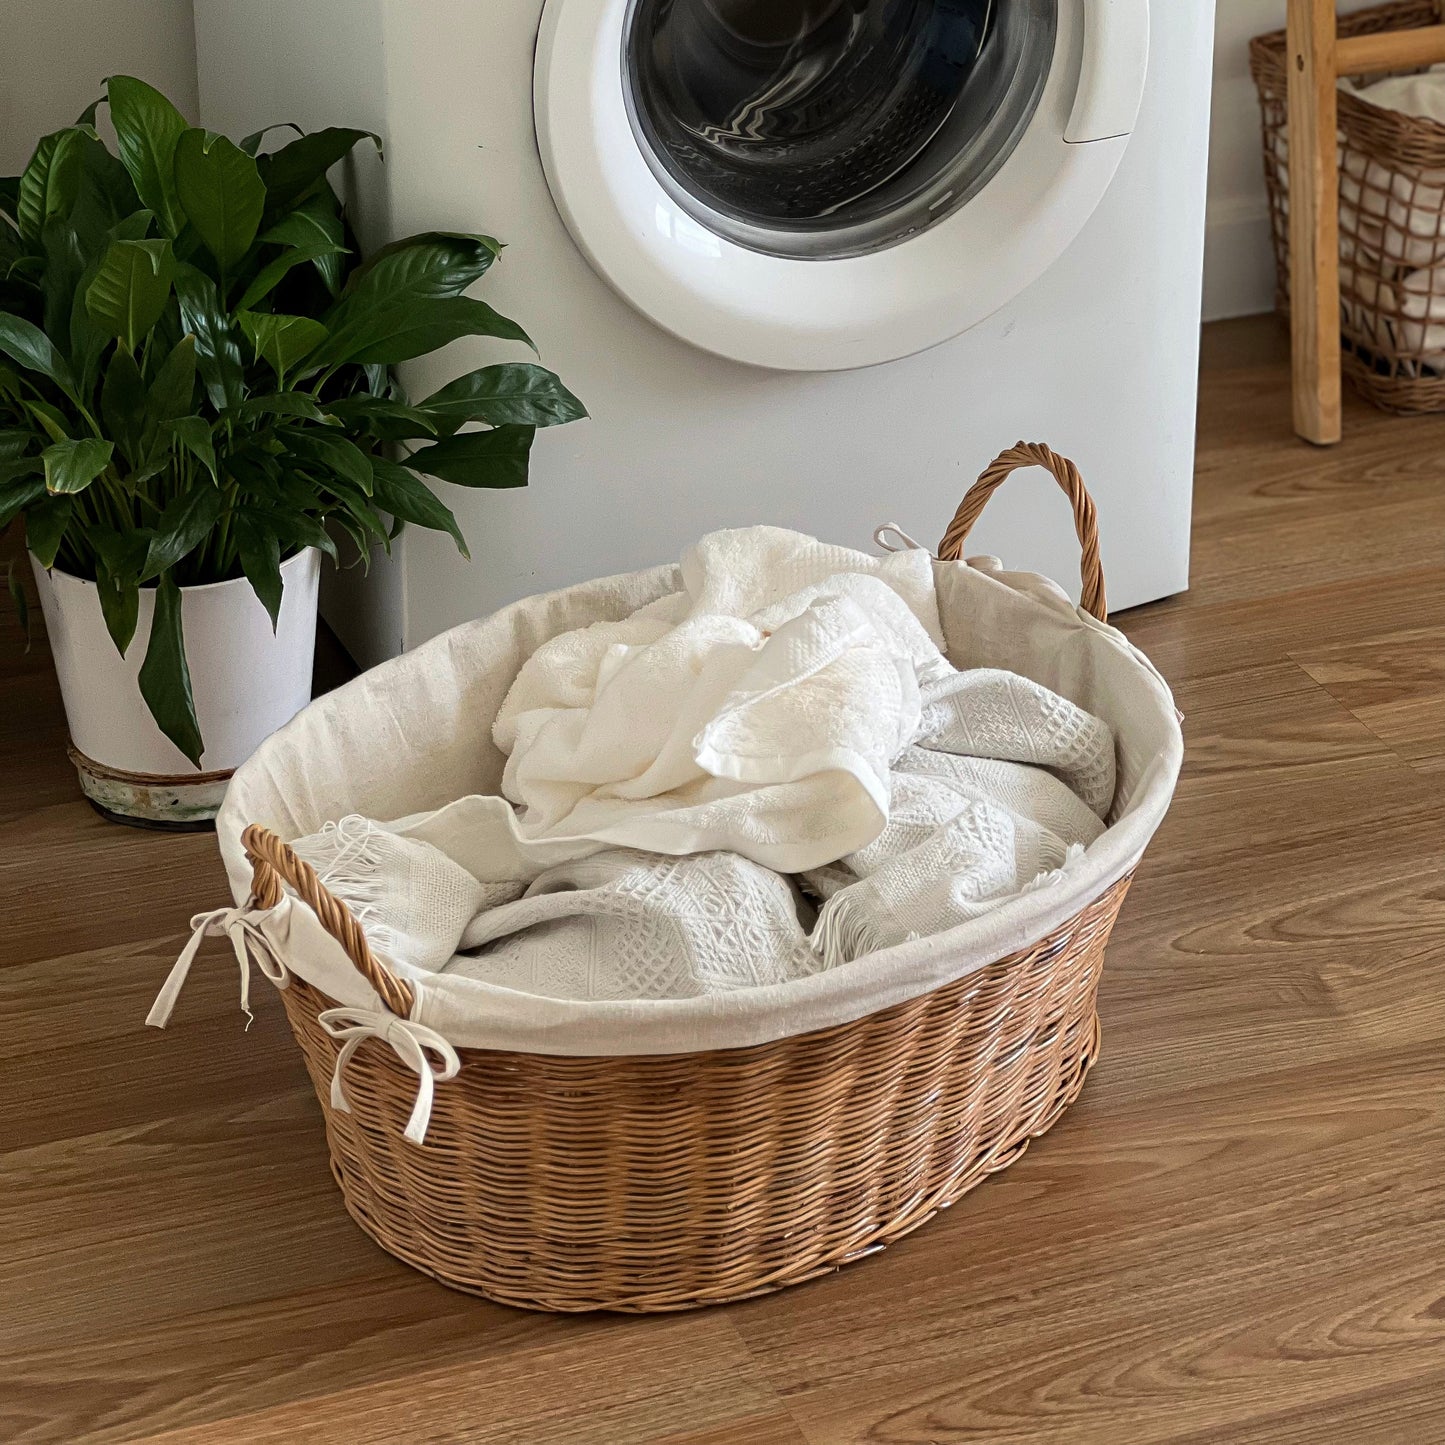 Giỏ đựng quần áo bẩn trong phòng giặt ủi/ phòng tắm